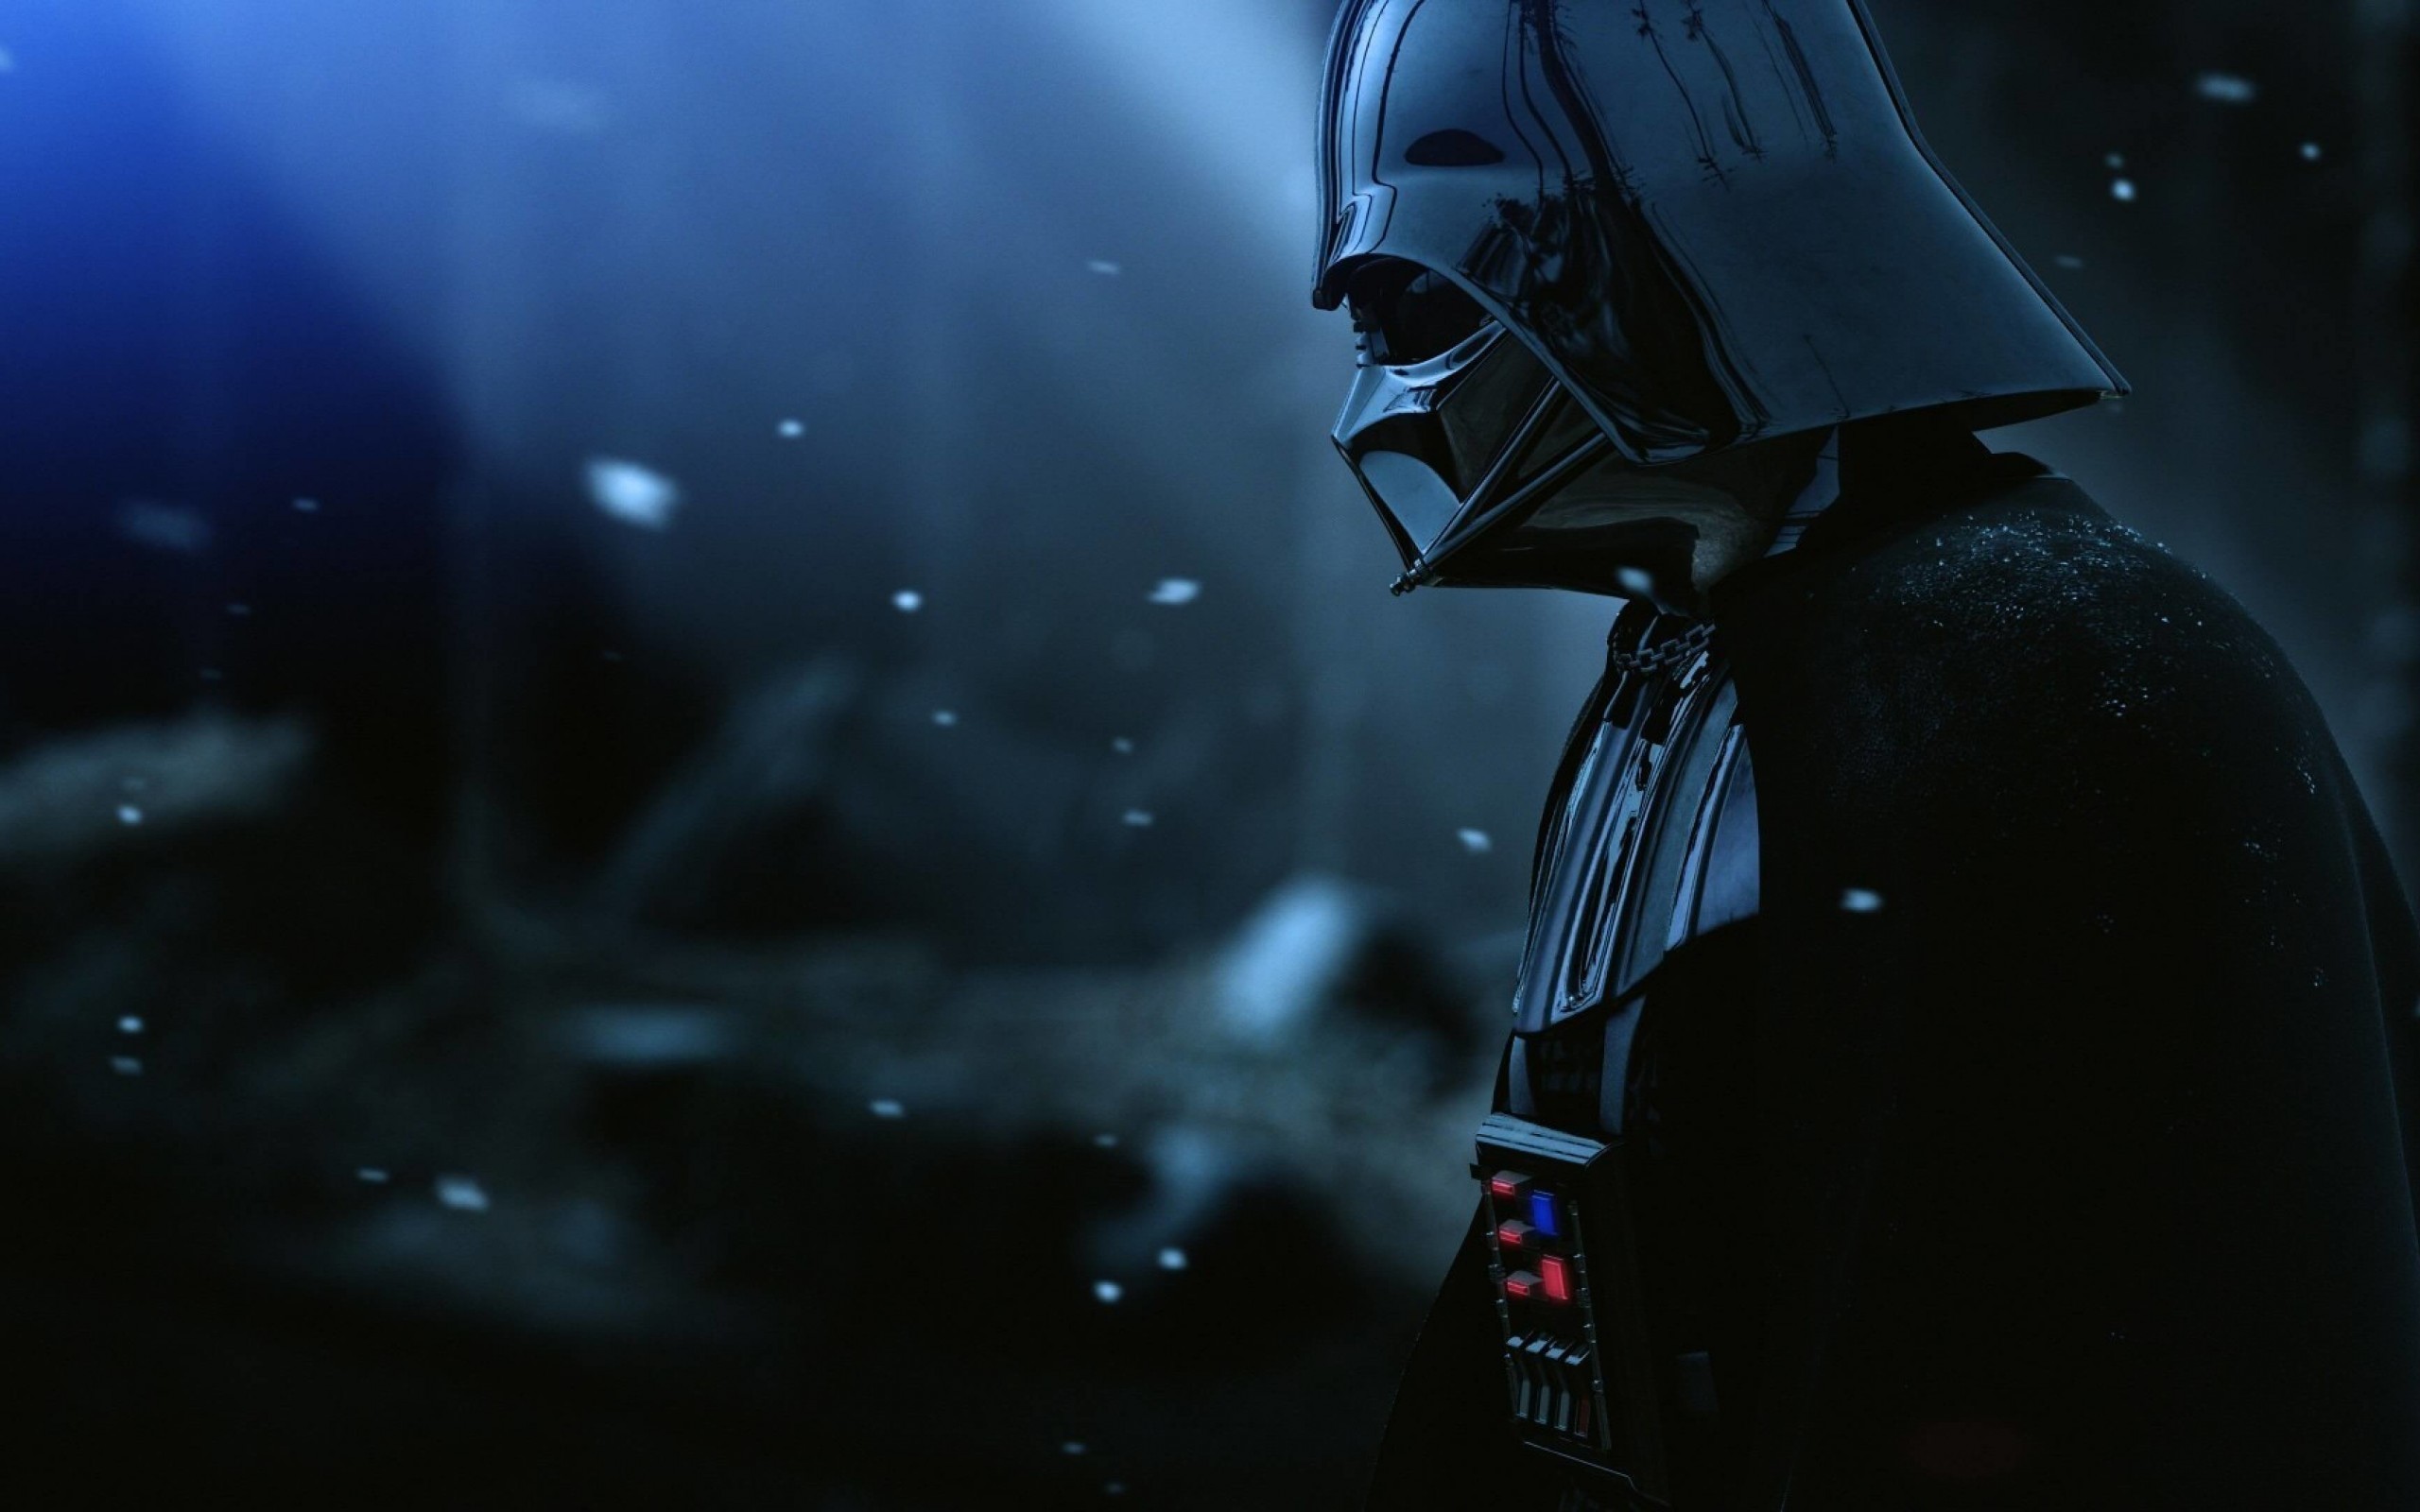 Darth Vader - The Force Unleashed 2 Wallpaper for Desktop 2560x1600